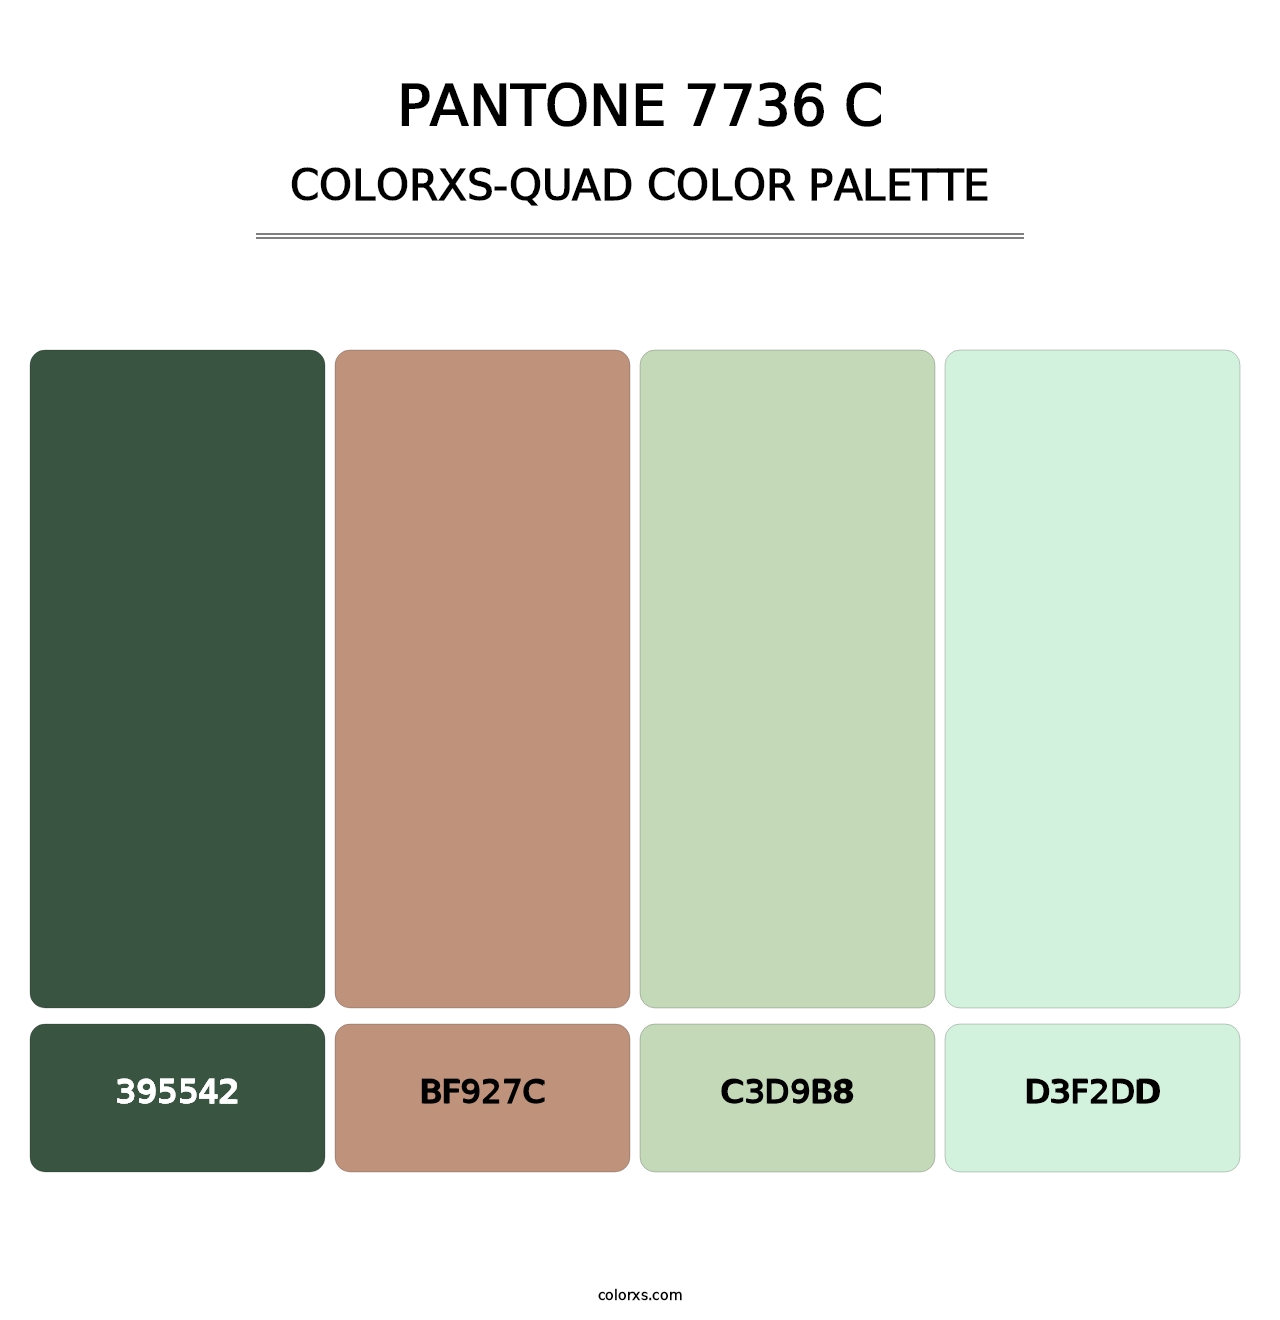 PANTONE 7736 C - Colorxs Quad Palette